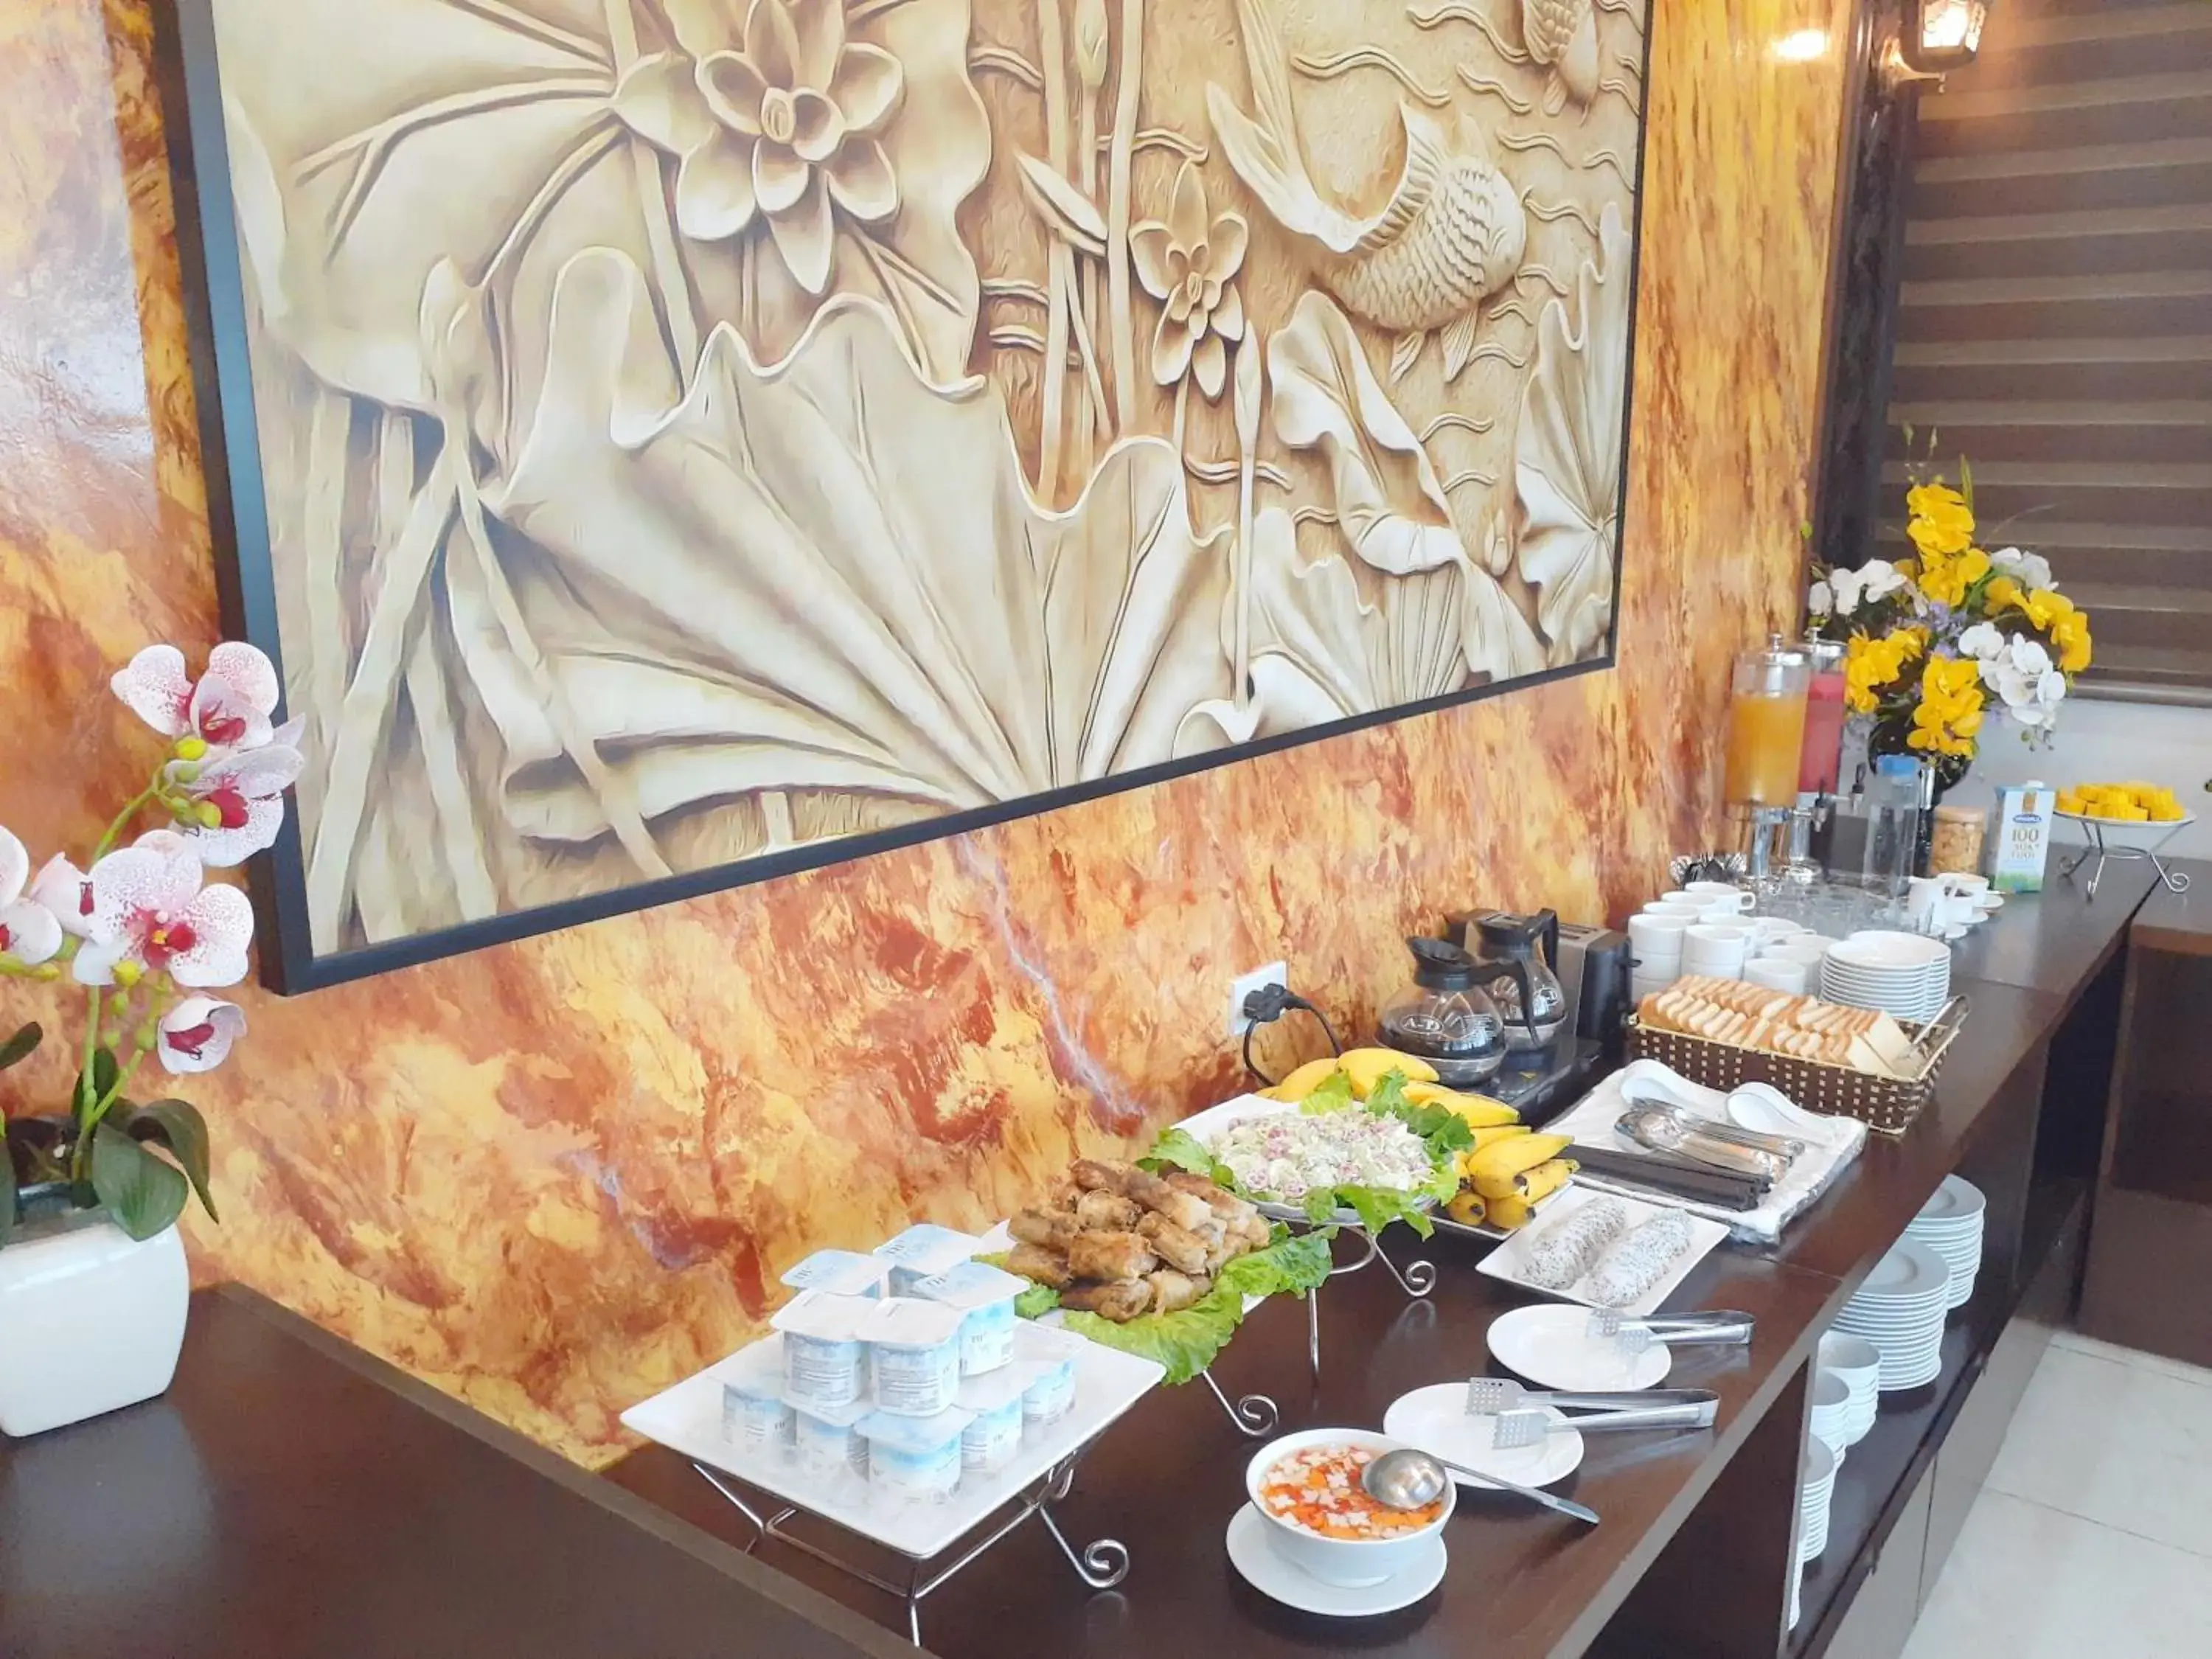 Buffet breakfast in T&M Luxury Hotel Hanoi